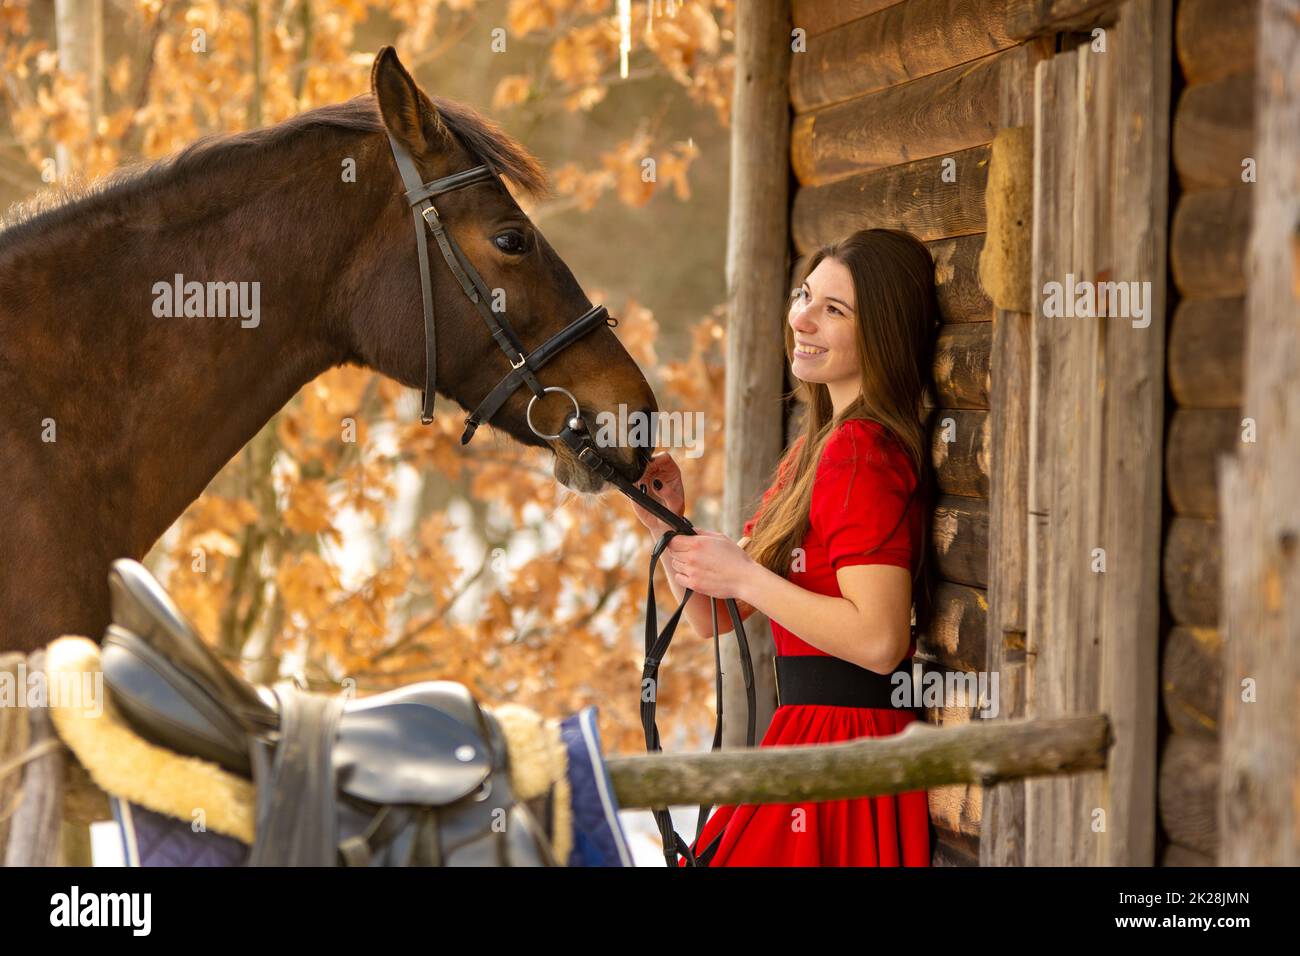 Porträt eines schönen Mädchens in einem roten Kleid, ein Mädchen hält ein Pferd am Zaumzeug, ein schöner Hintergrund einer Holzmauer und Wald Stockfoto